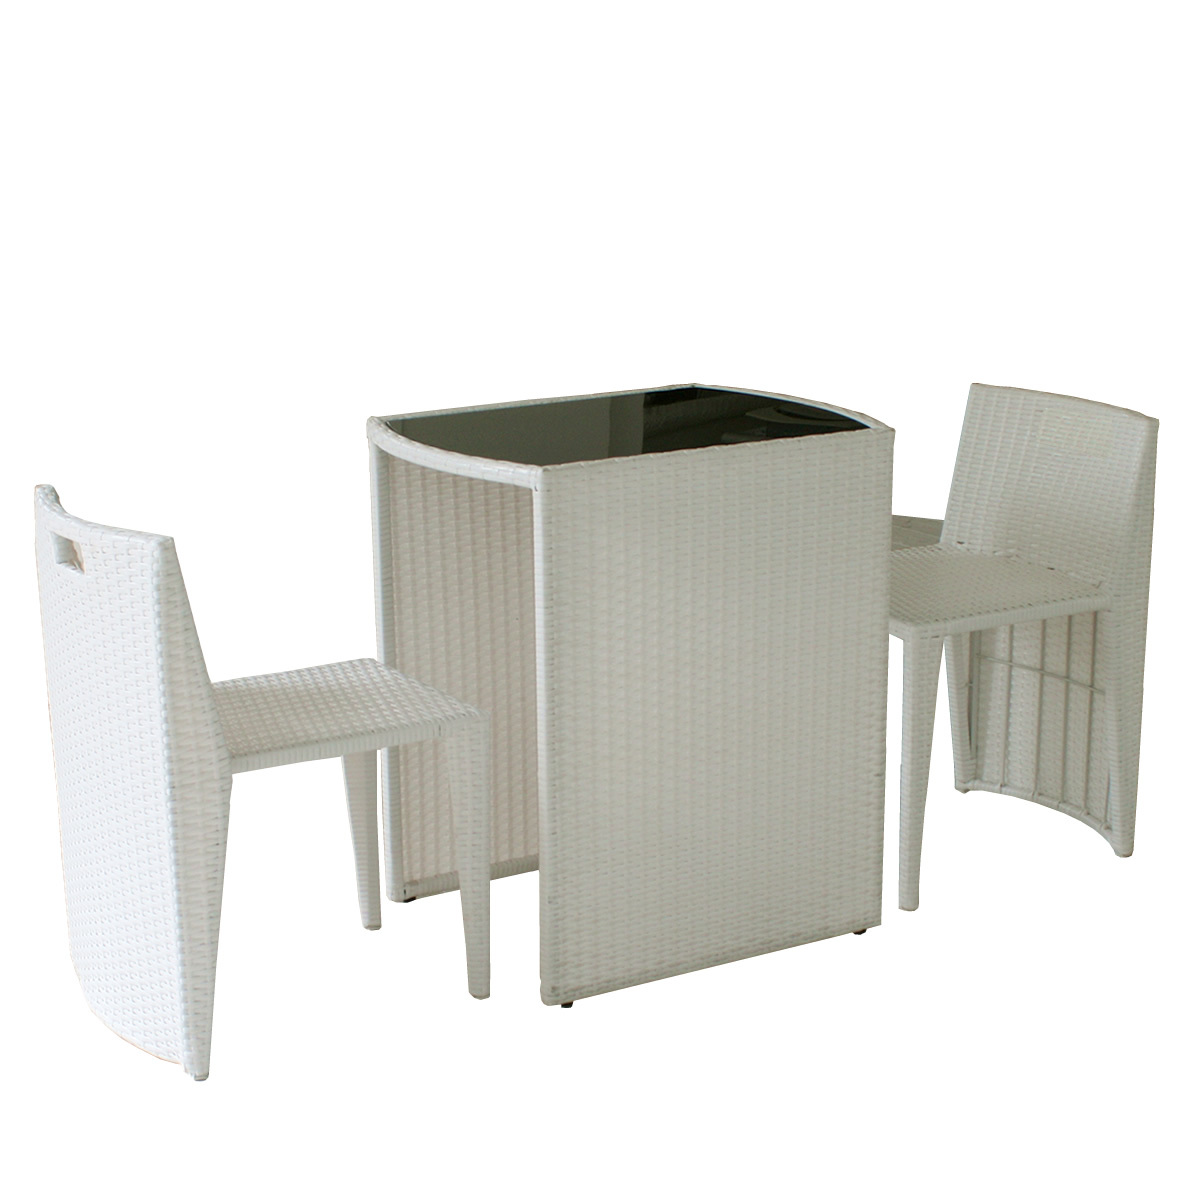 ガーデンテーブル ラタン調 テーブル チェアセット 3点セット コンパクト リゾモダン 机 椅子 おしゃれ 人工ラタン ガーデン 庭 ベランダ  バルコニー